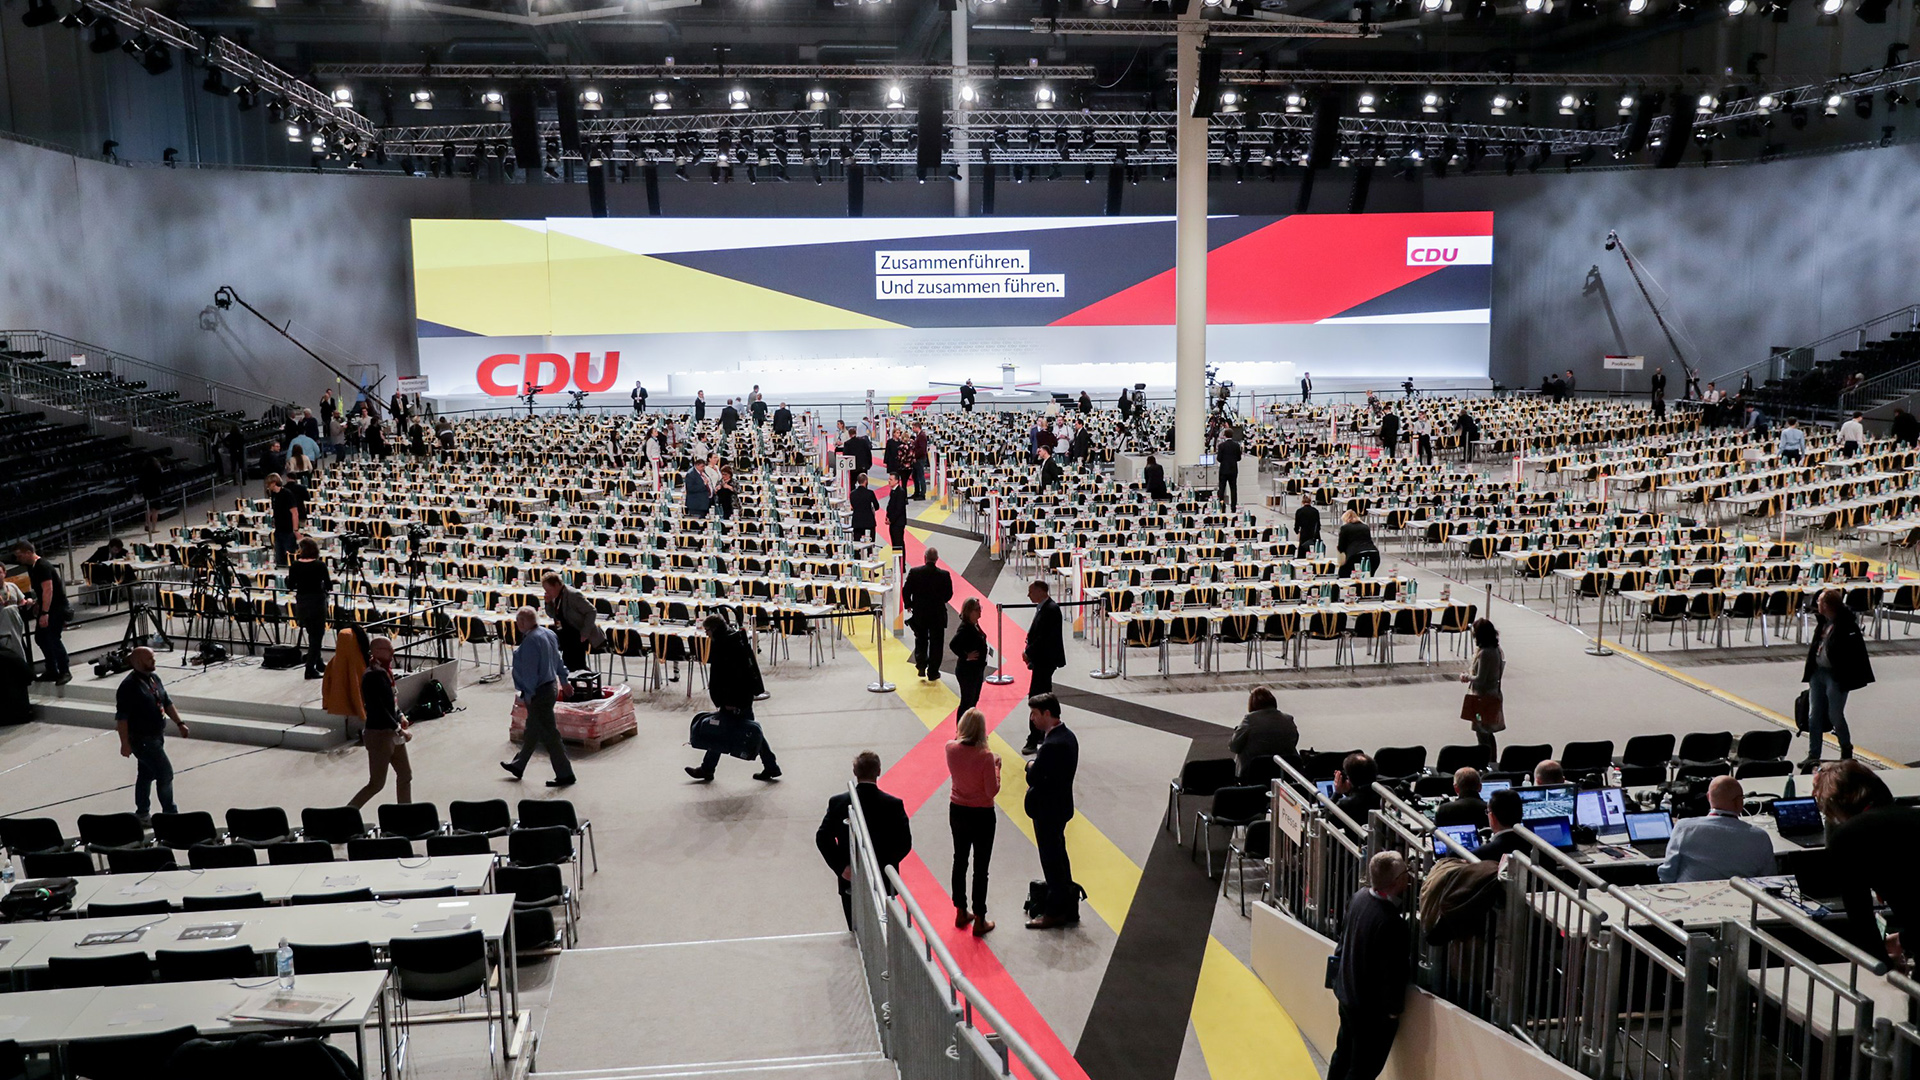 Die Halle für den 31. CDU-Bundesparteitag am frühen Morgen in Hamburg | Bildquelle: dpa